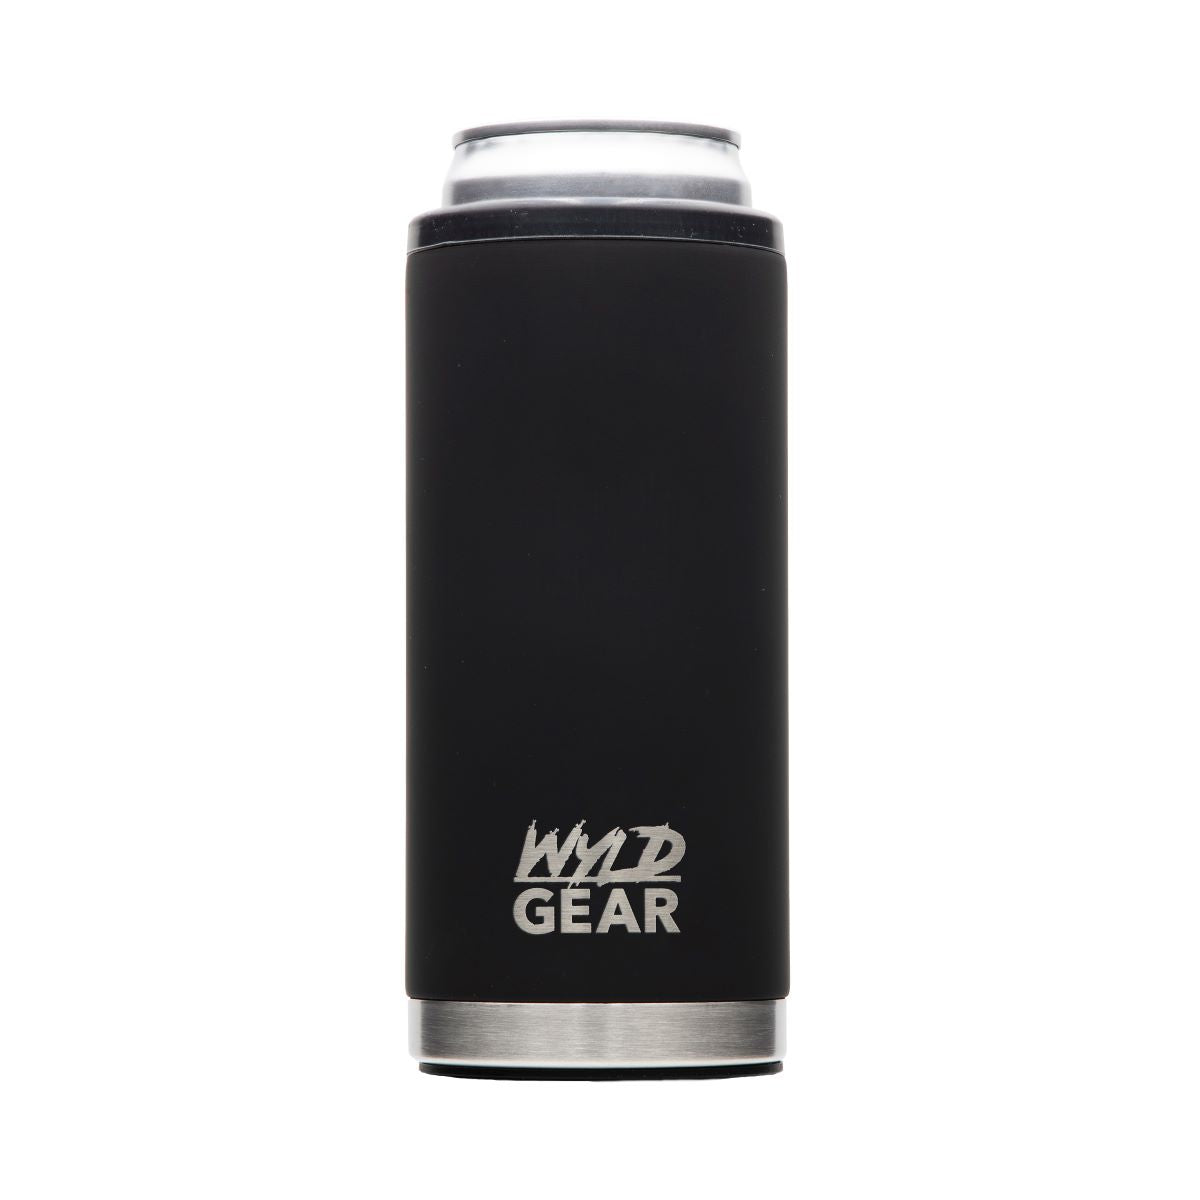 'Wyld Gear' 12 oz. Slim Can Holder - Black